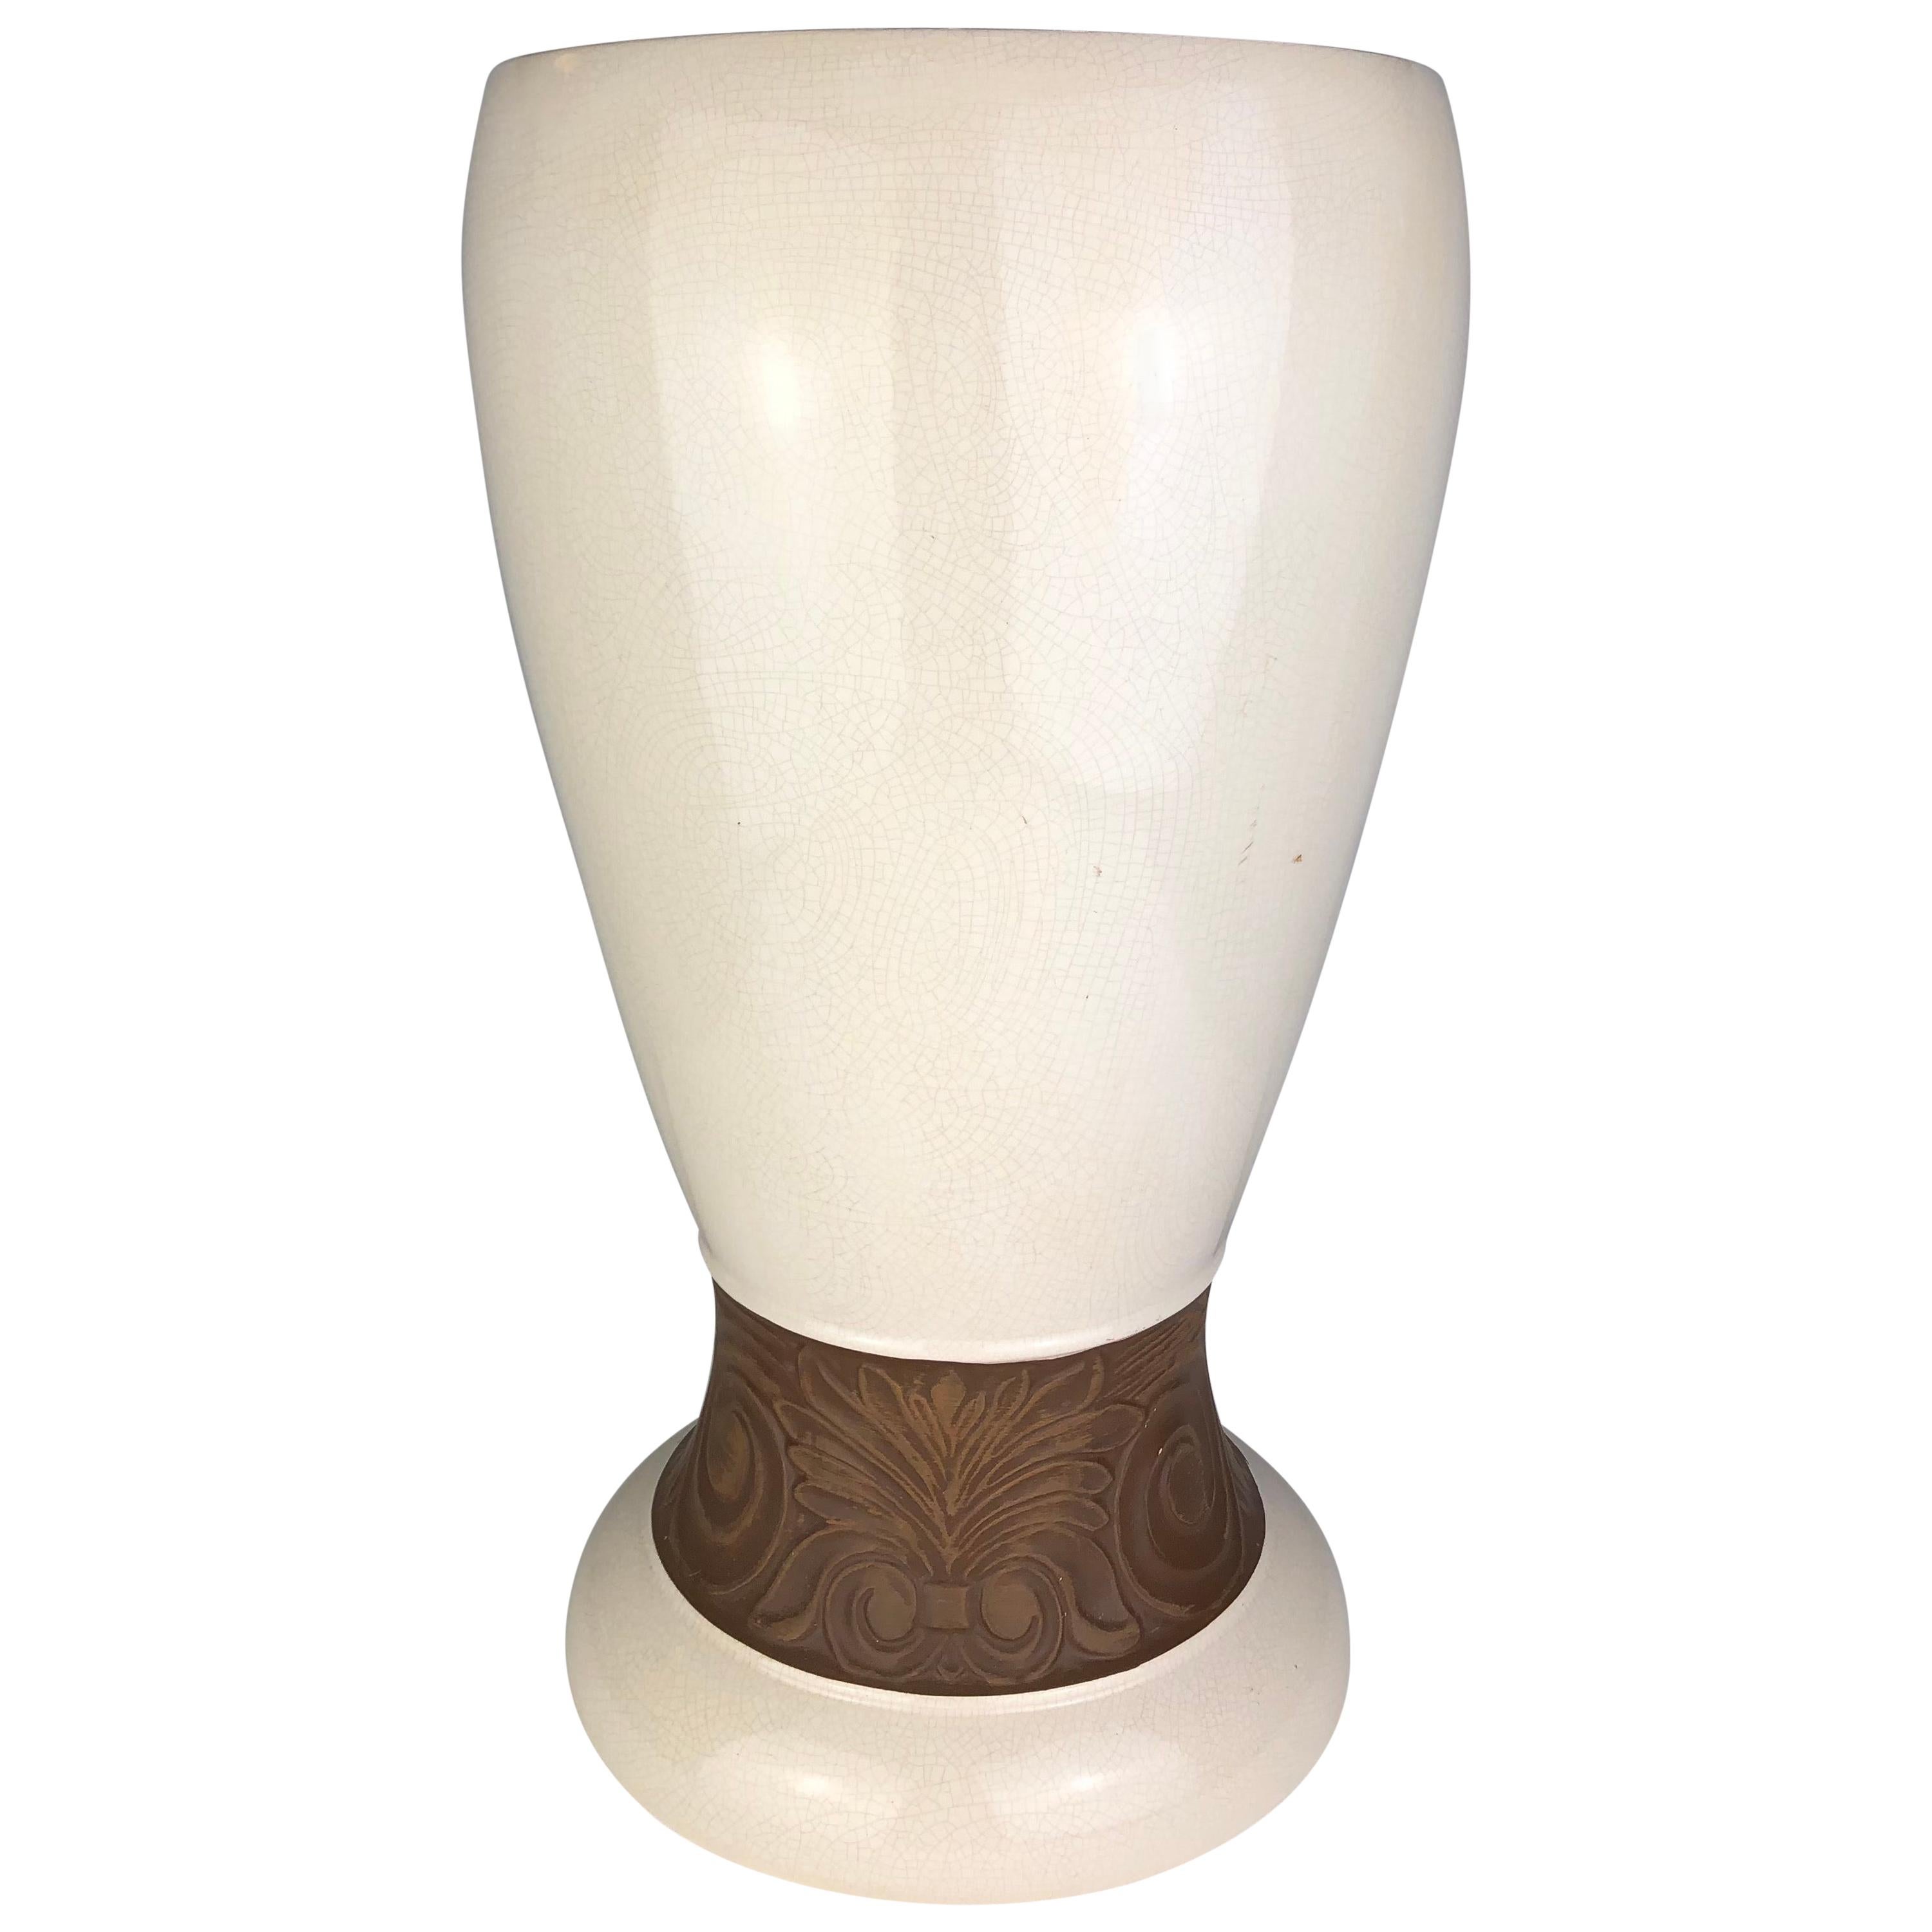 Superbe vase Art déco en céramique de Saint Clément, France, avec une finition en glaçure craquelée blanche et un décor floral près du fond, vers les années 1930. 

L'émail clair craquelé était une technique populaire pour les statues d'animaux et